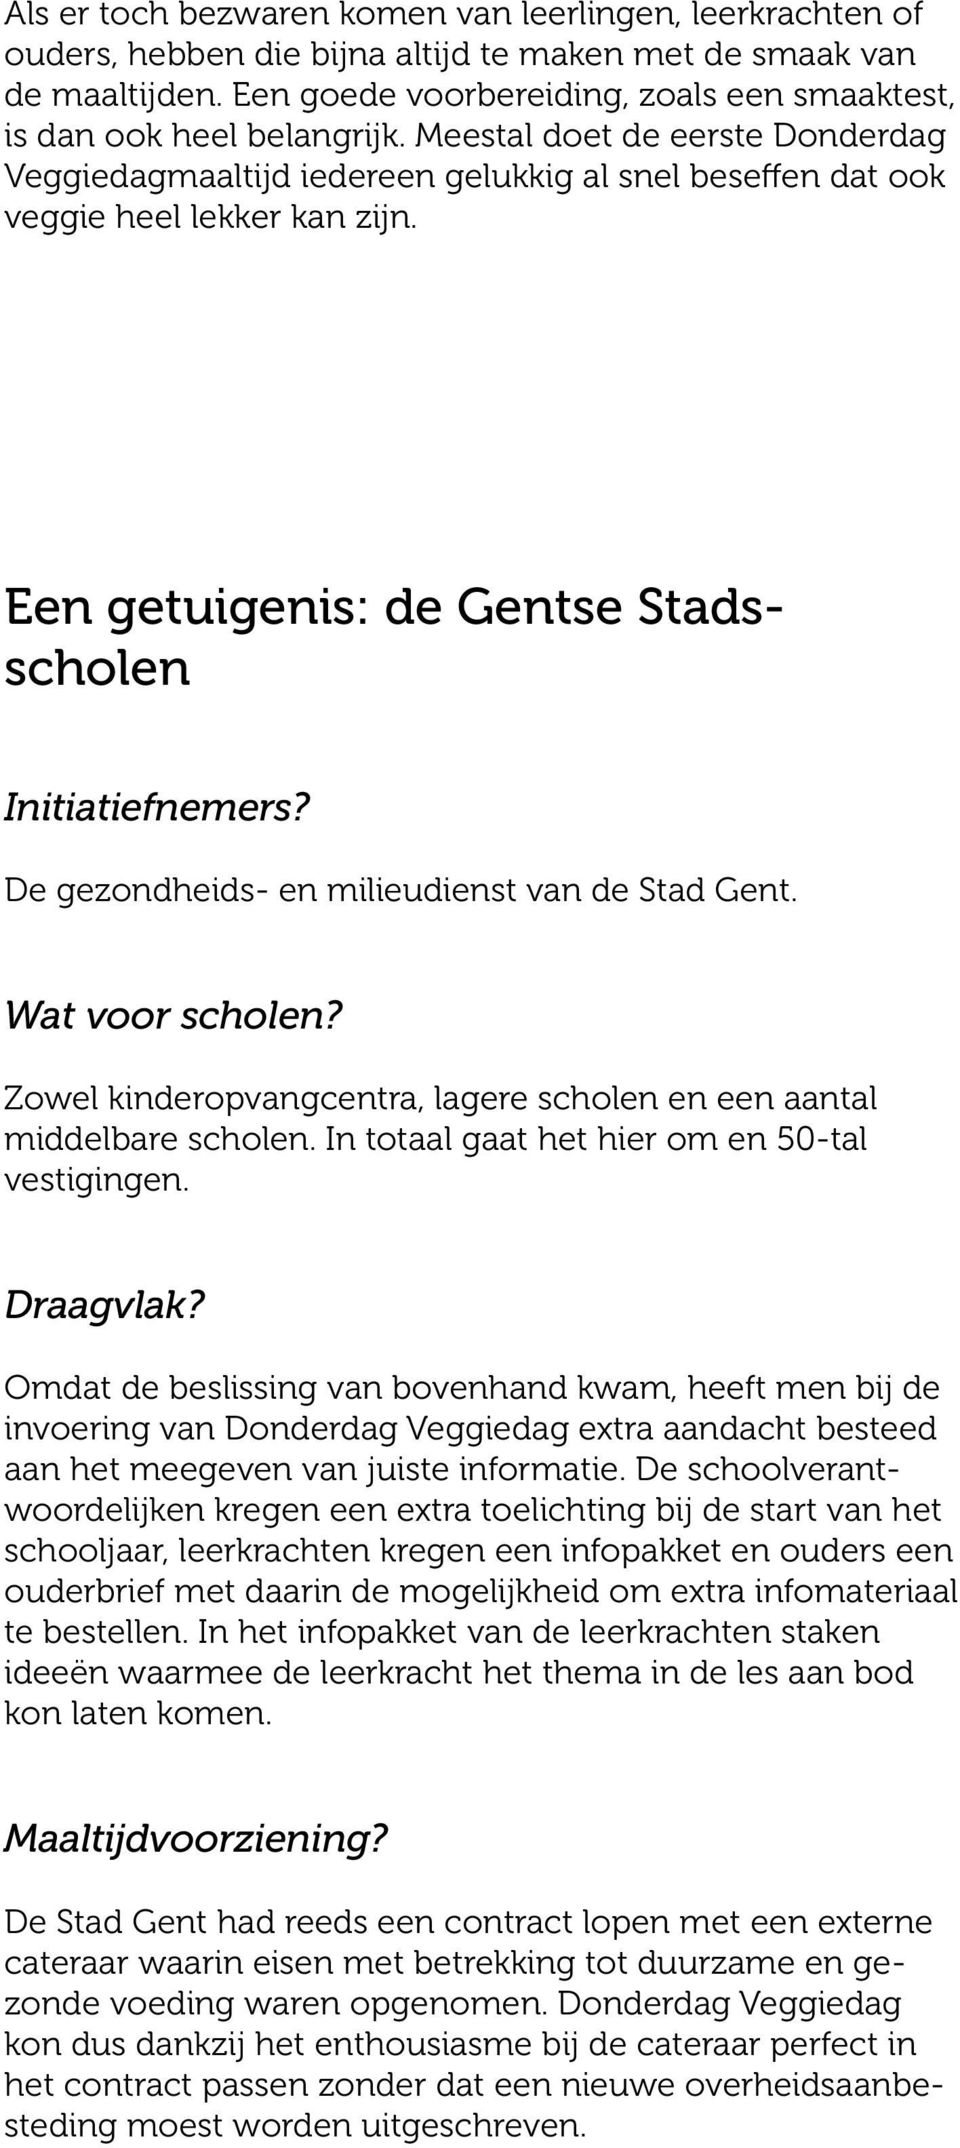 Een getuigenis: de Gentse Stadsscholen Initiatiefnemers? De gezondheids- en milieudienst van de Stad Gent. Wat voor scholen? Zowel kinderopvangcentra, lagere scholen en een aantal middelbare scholen.